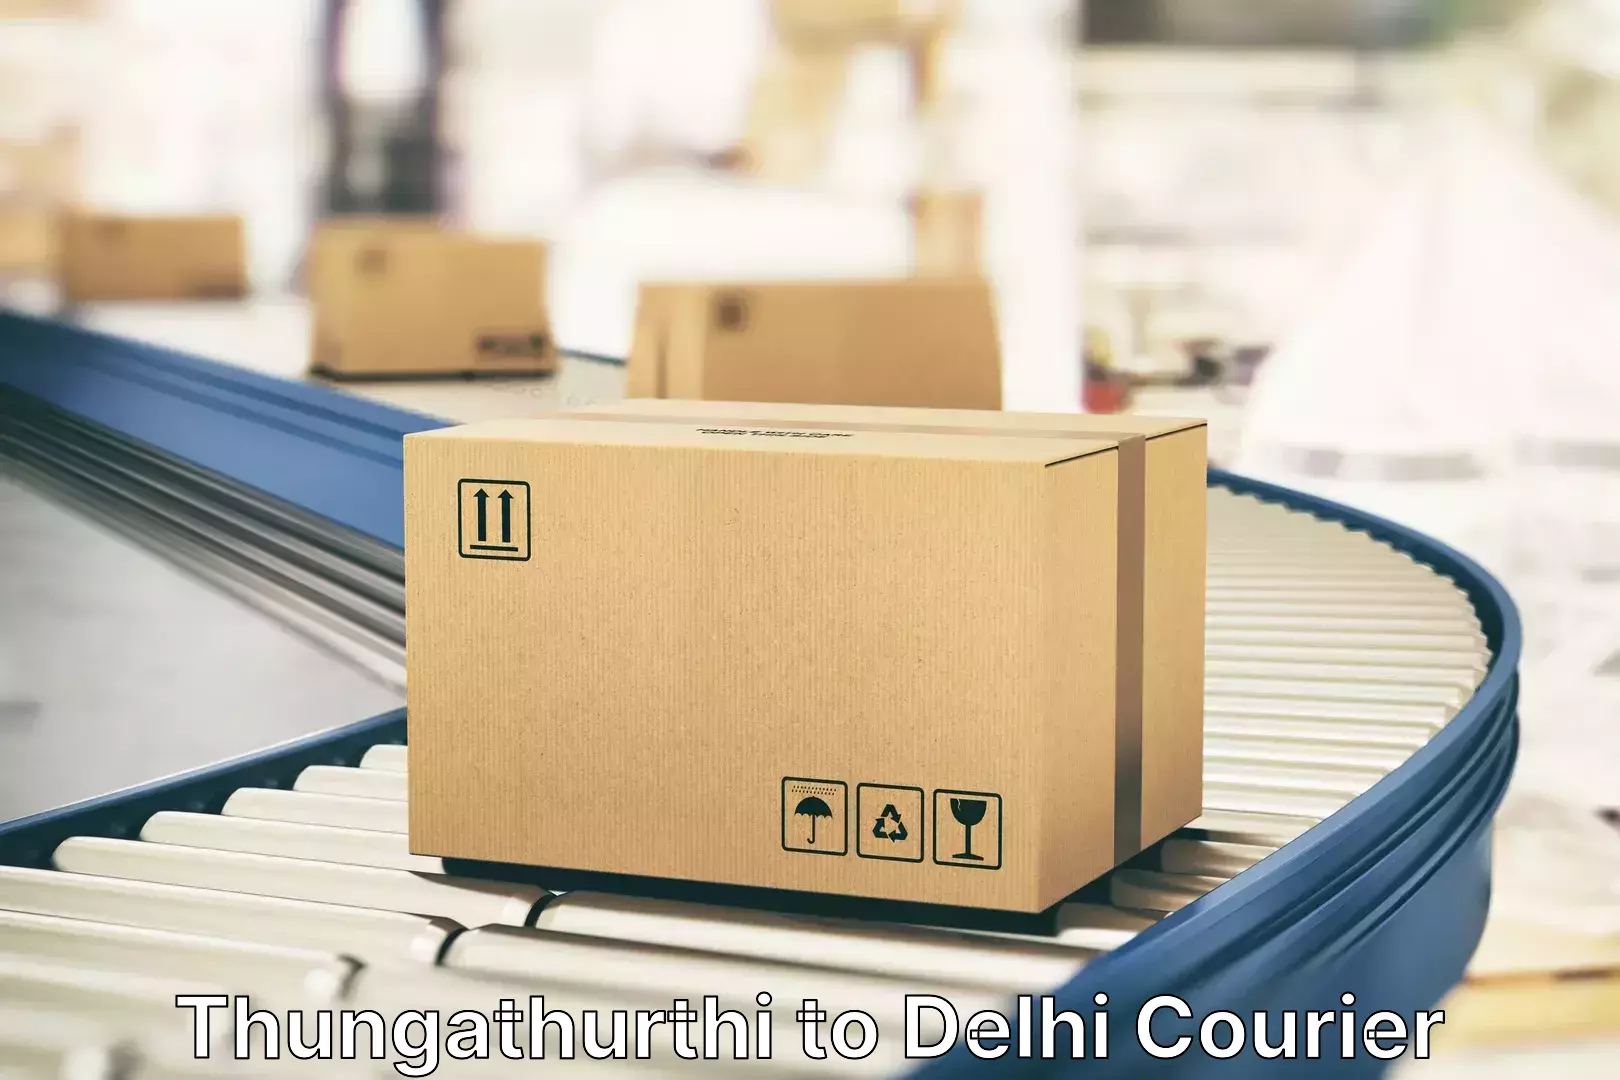 Luggage delivery system Thungathurthi to Jawaharlal Nehru University New Delhi